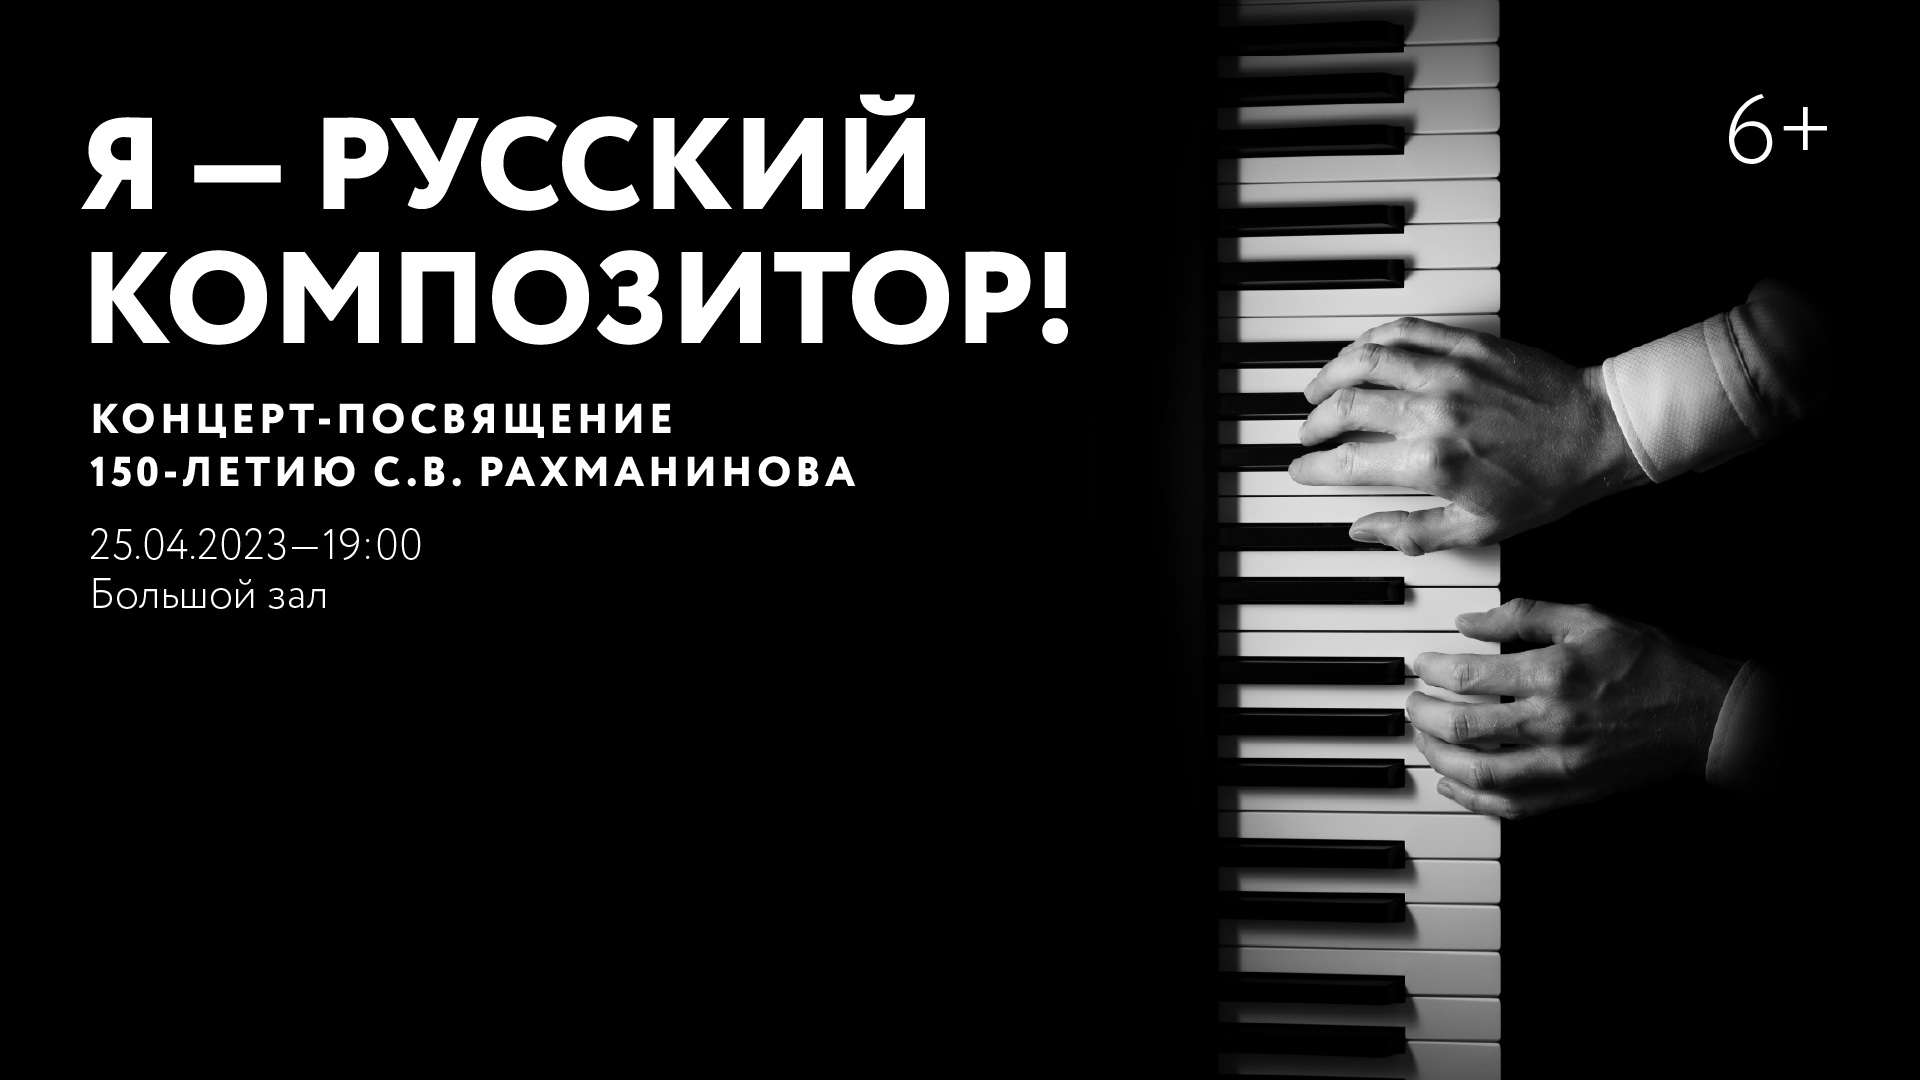 «Я — русский композитор!». Концерт-посвящение 150-летию <br>С.В. Рахманинова